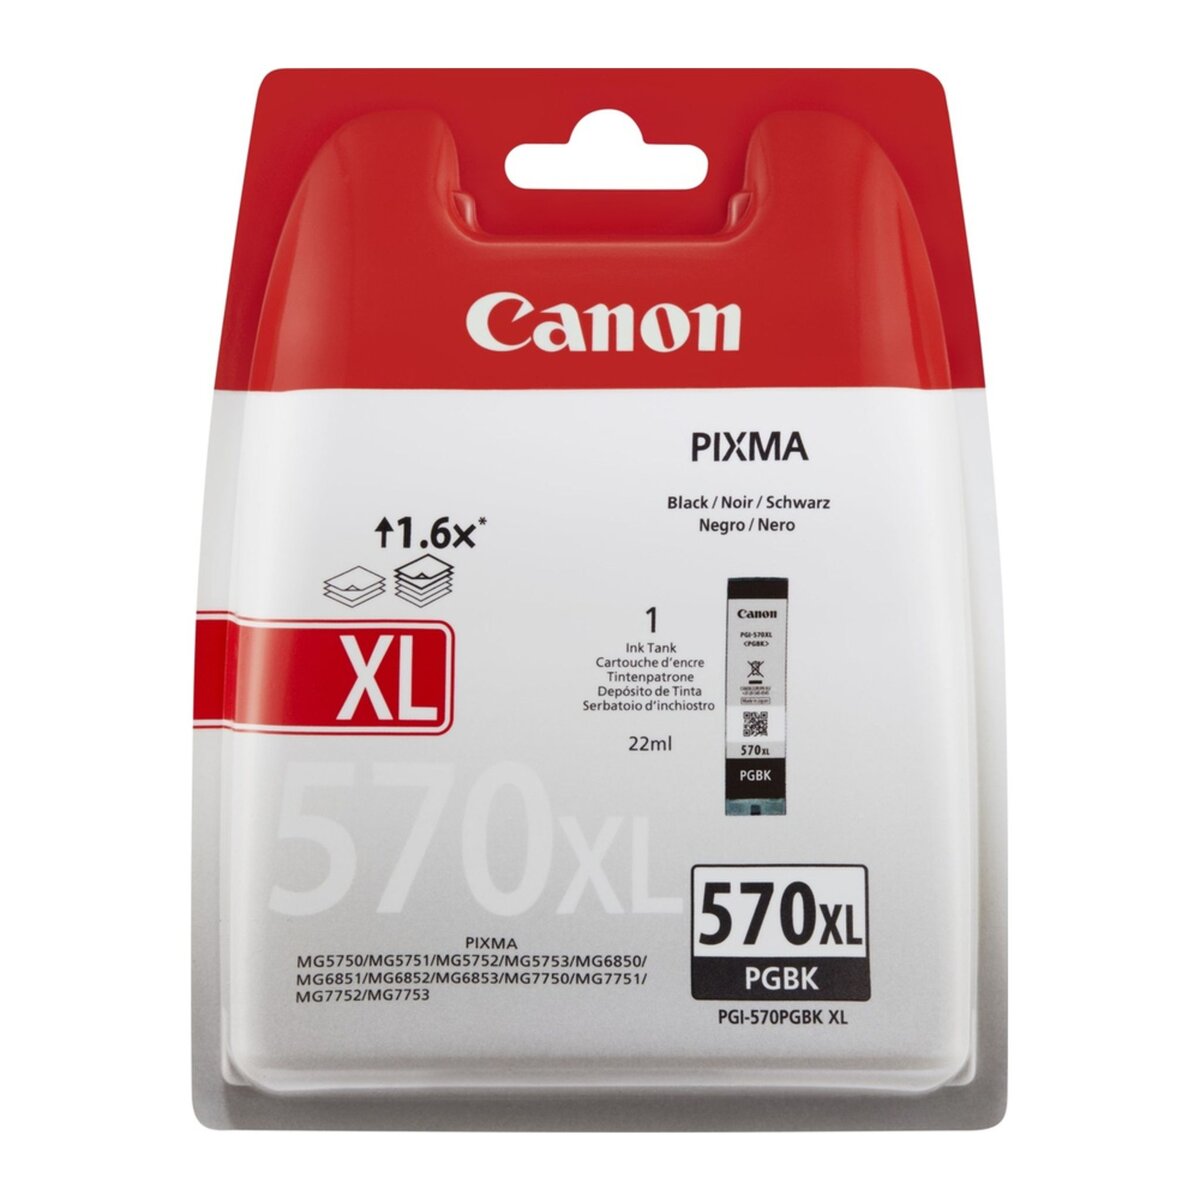 Cartouches d'encre - Cartouche compatible Canon PGI-570 XL / Noir